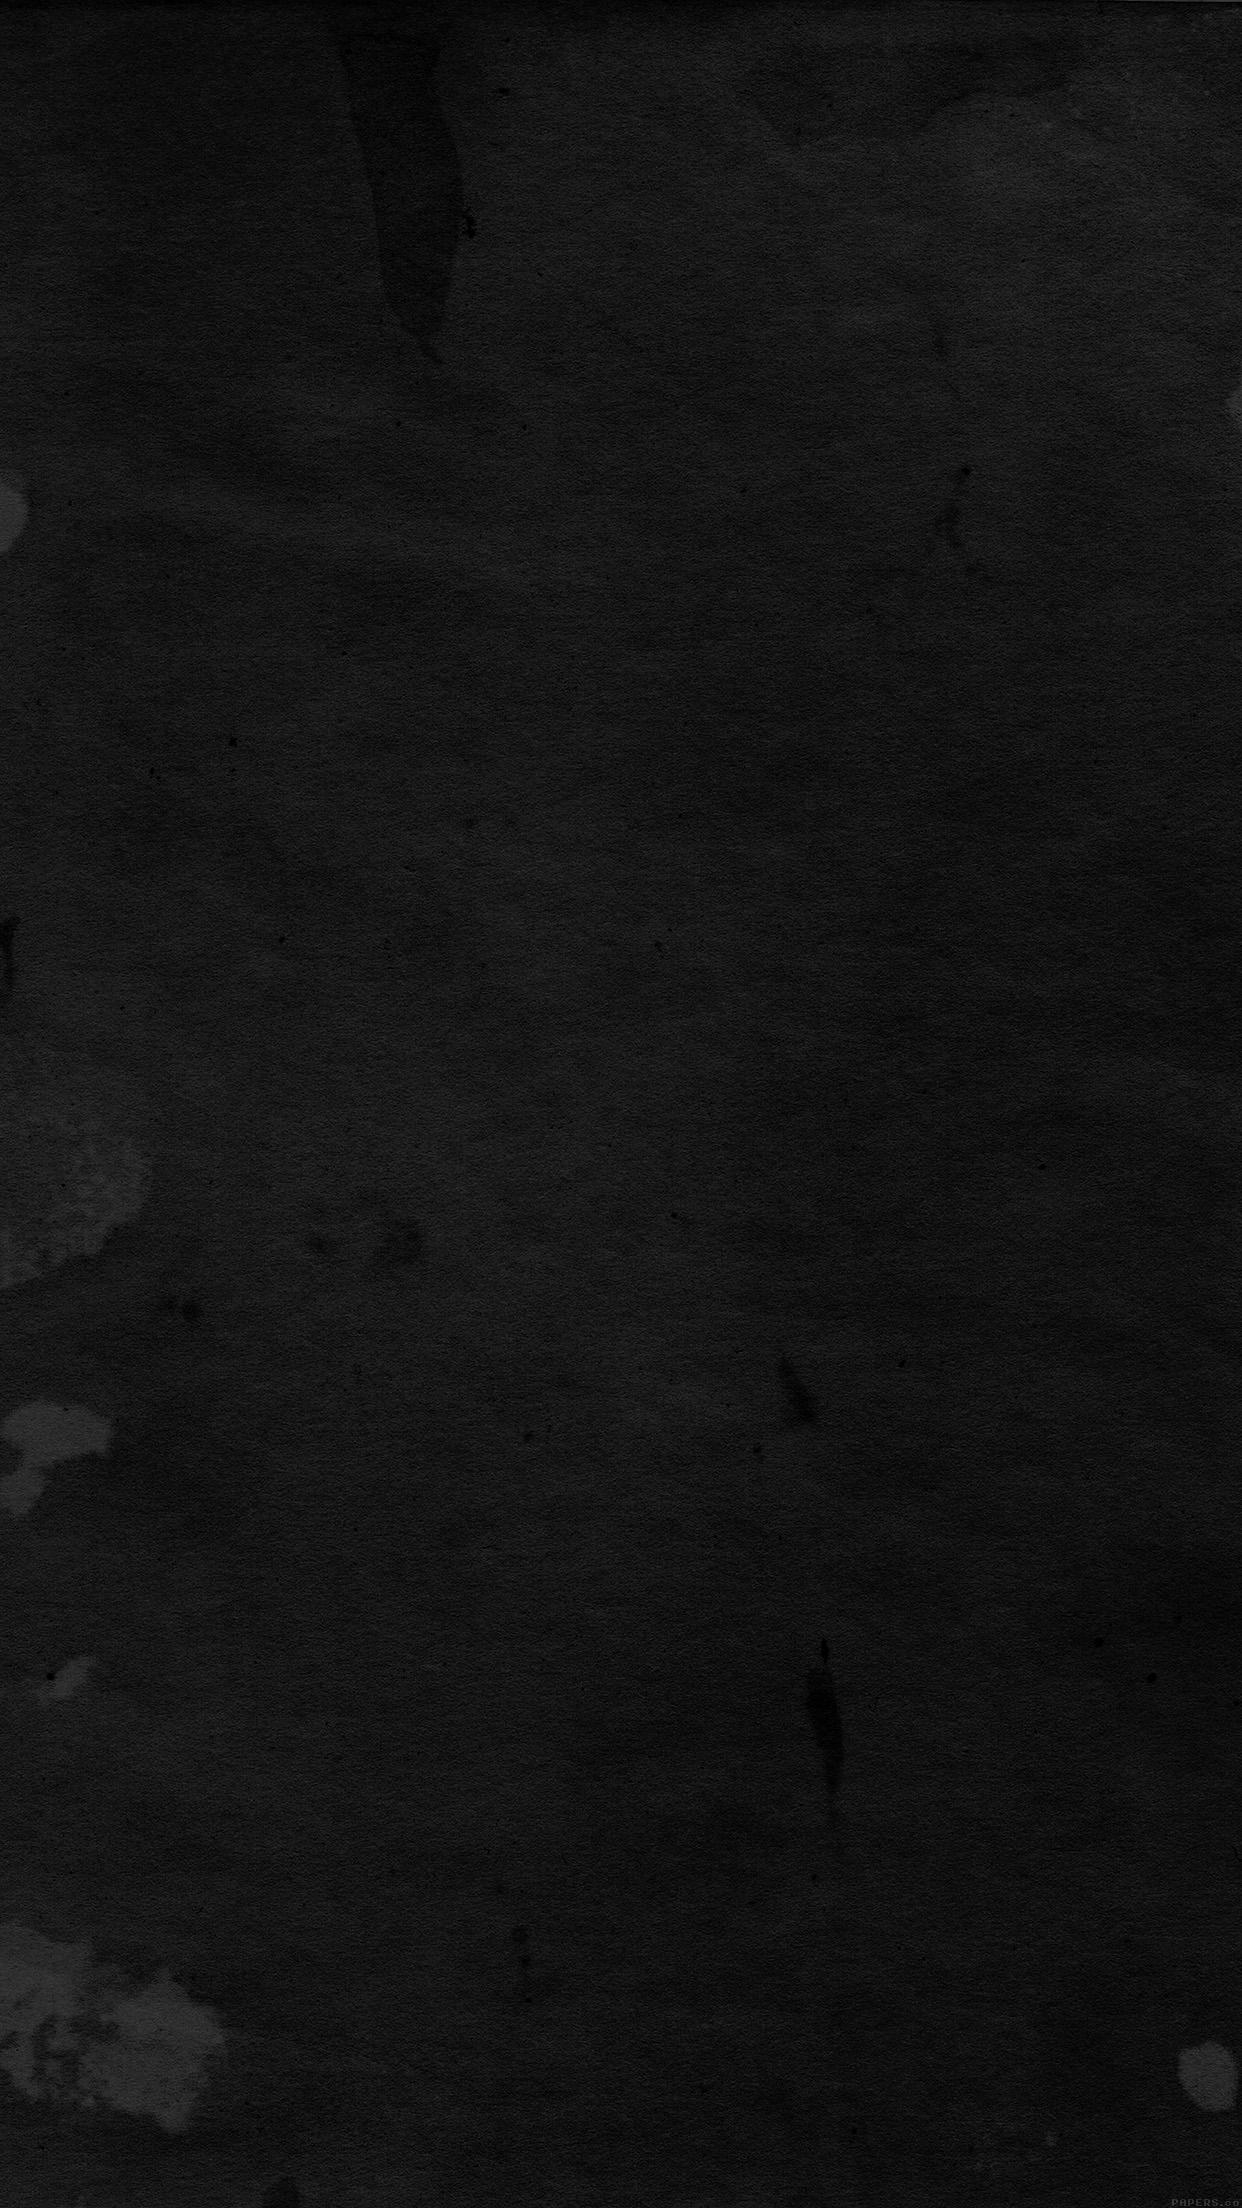 [43+] Dark Aesthetic Wallpaper | WallpaperSafari.com